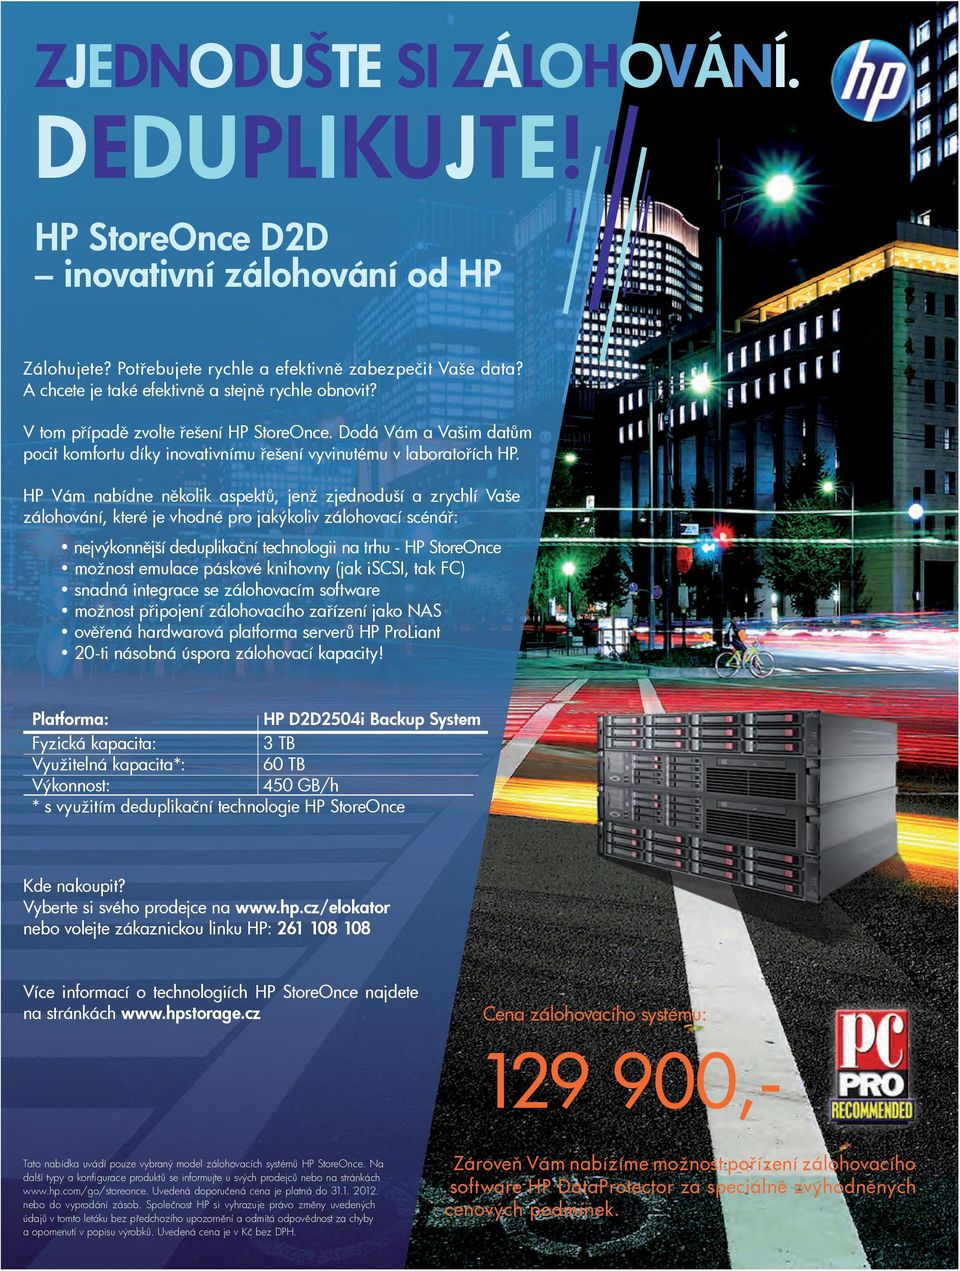 HP Platforma: HP D2D2504i Backup System